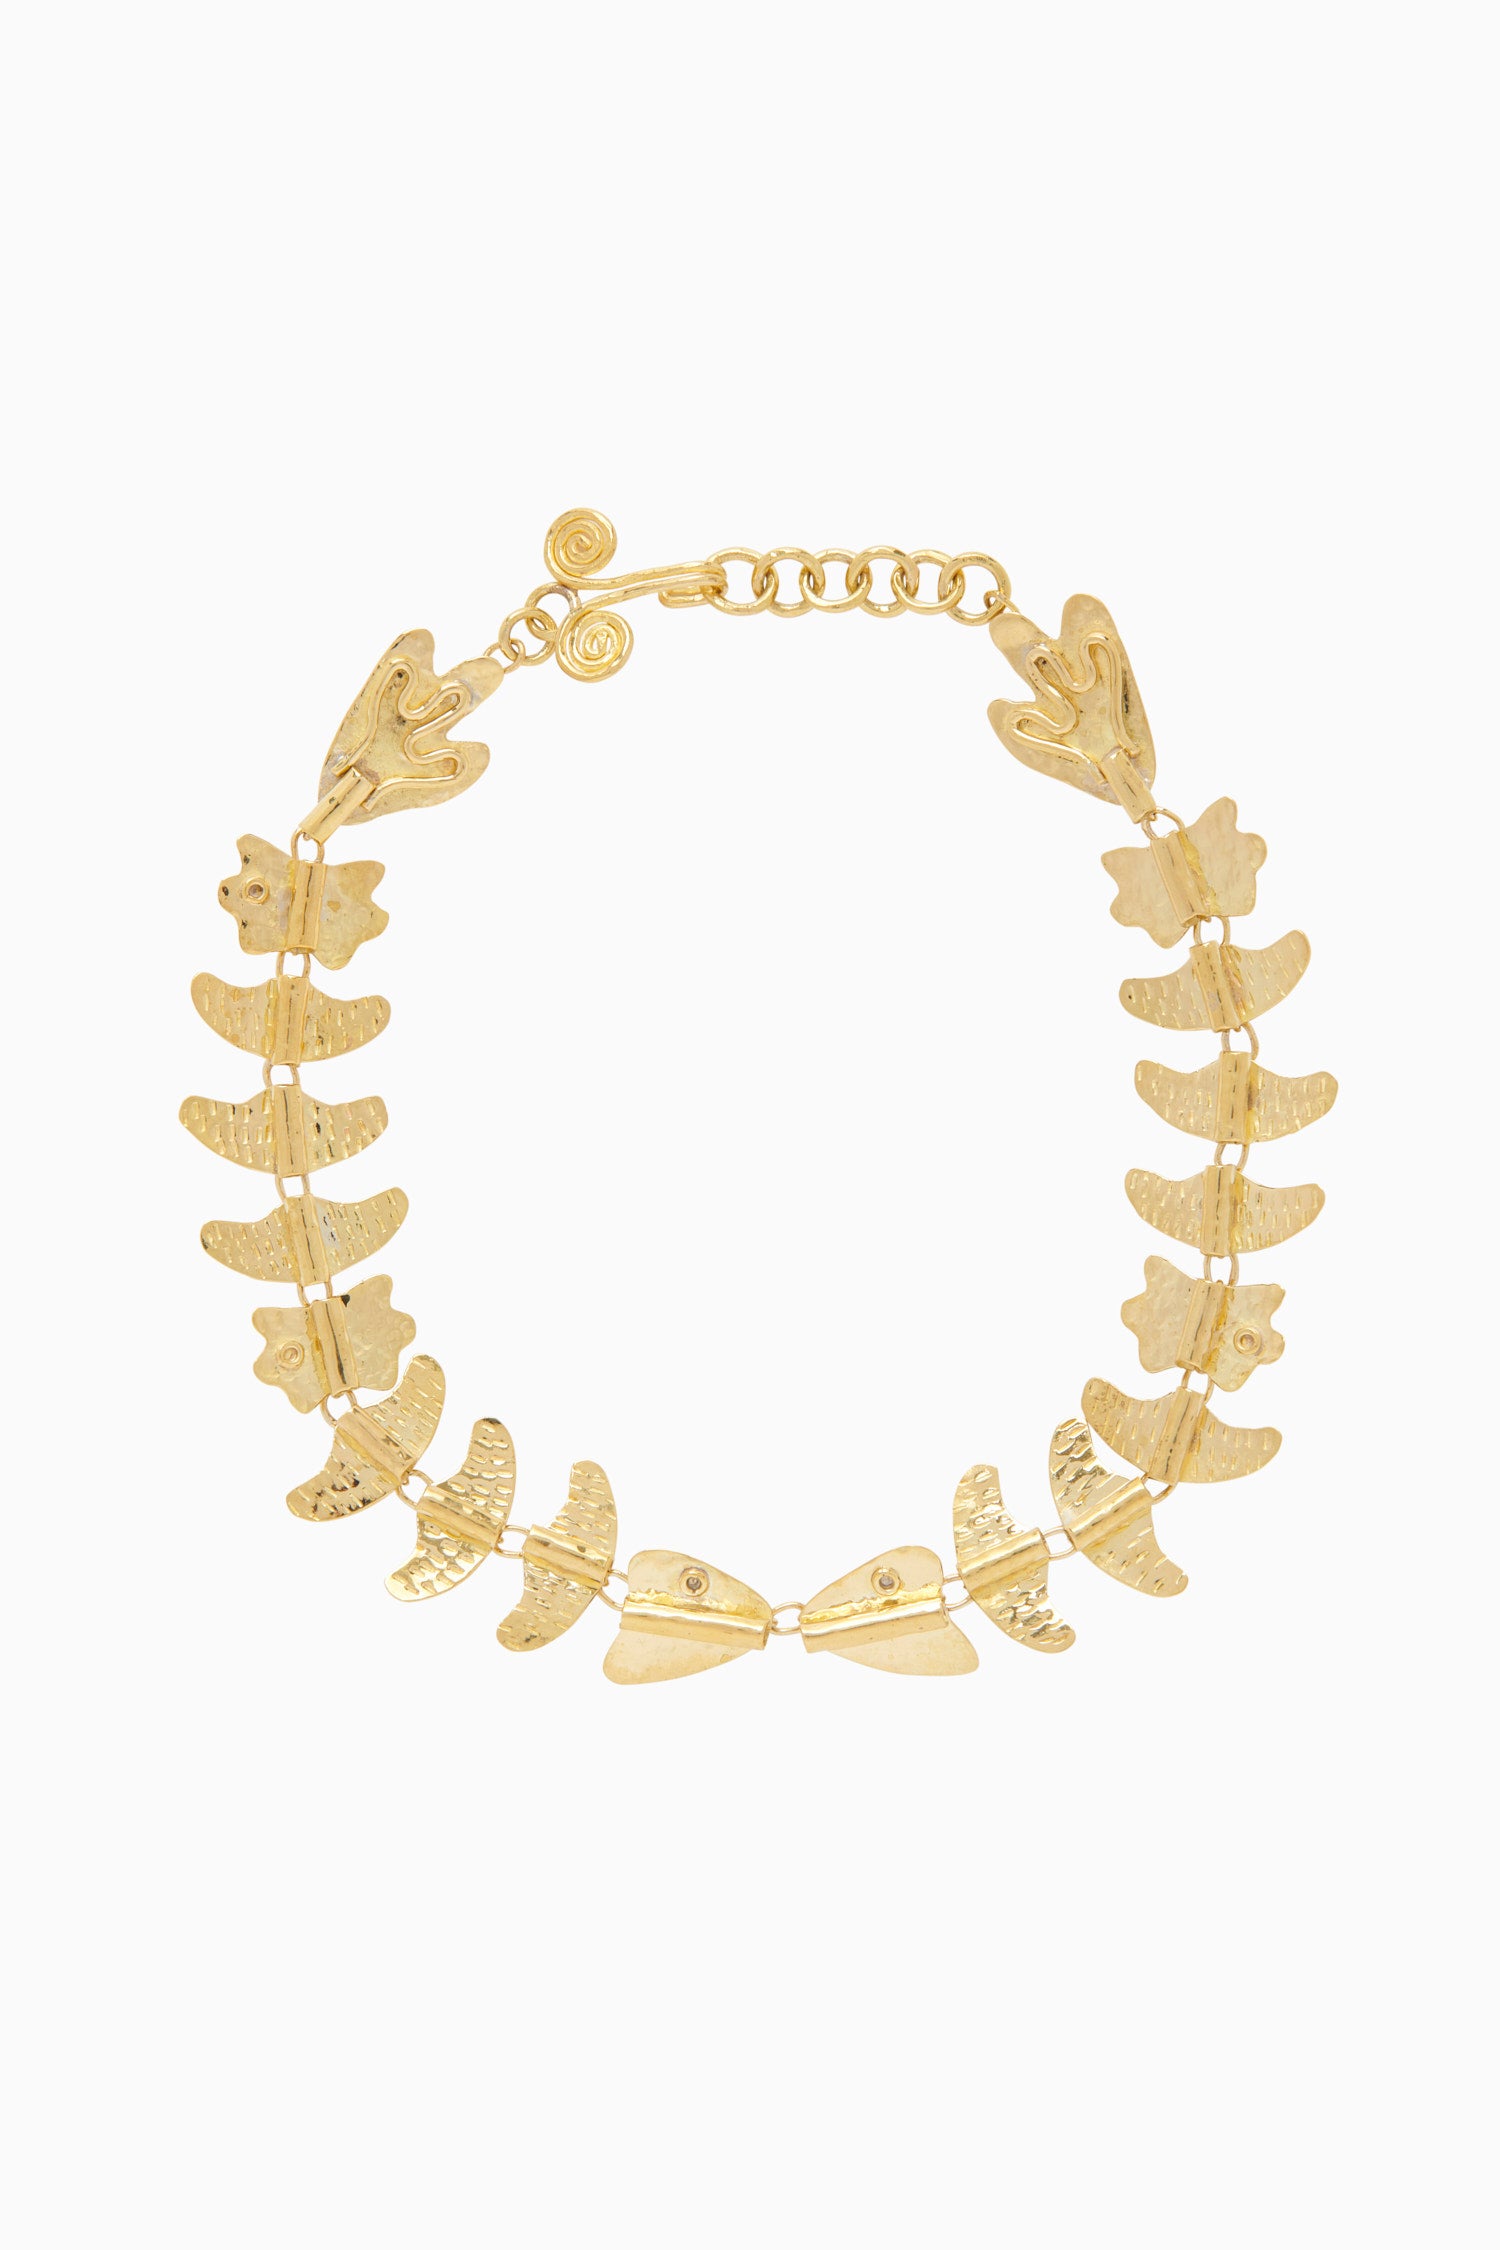 Ulla Johnson Hand Hammered Chain Necklace - Brass